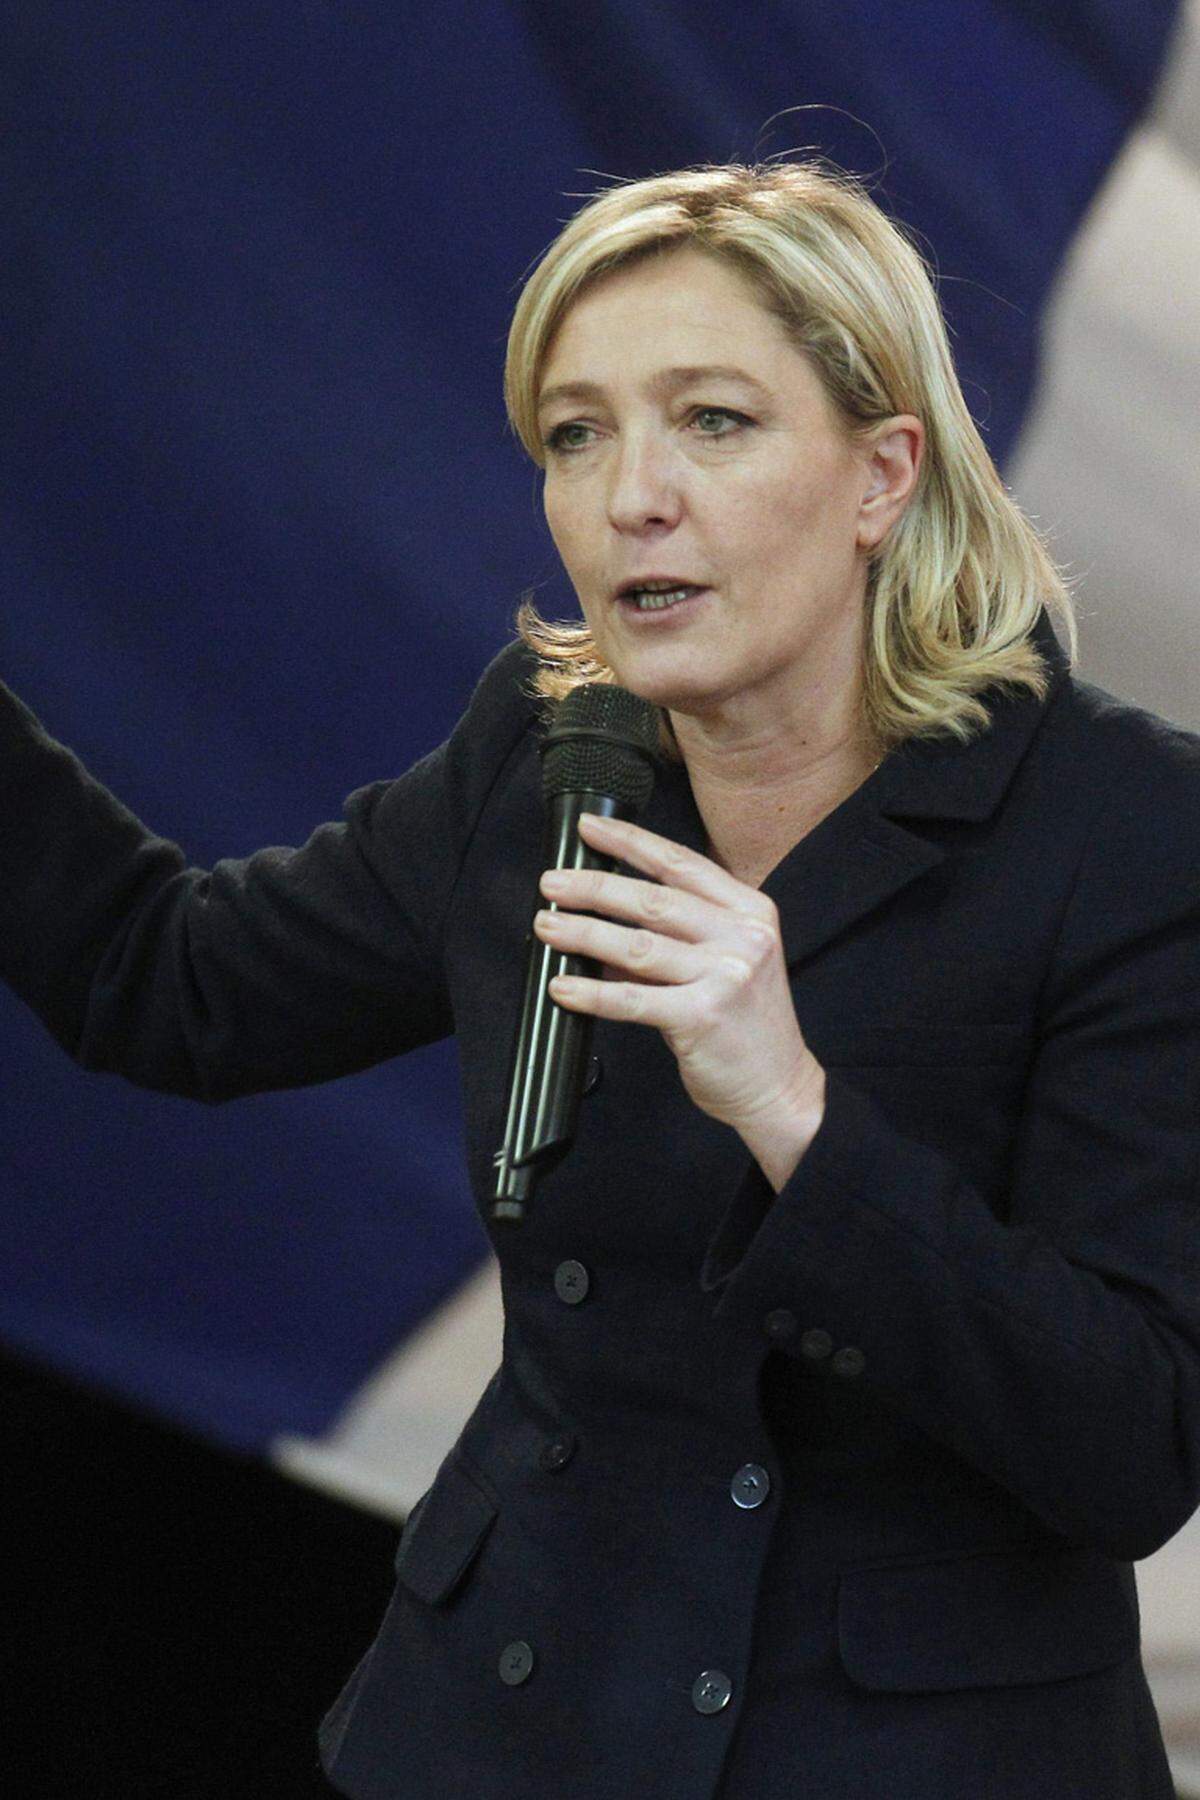 Diese Frau wird viel zu reden geben. Marine Le Pen soll im Jänner den Parteivorsitz des Front National (FN) übernehmen. Der 82-jährige rechtsextreme Haudegen Jean-Marie Le Pen hat sich entschlossen, die Leitung seiner Partei abzugeben. Die 42-jährige Marine ist so aggressiv und schlagfertig wie ihr Vater. Sie will nun den FN verjüngen (mehr).